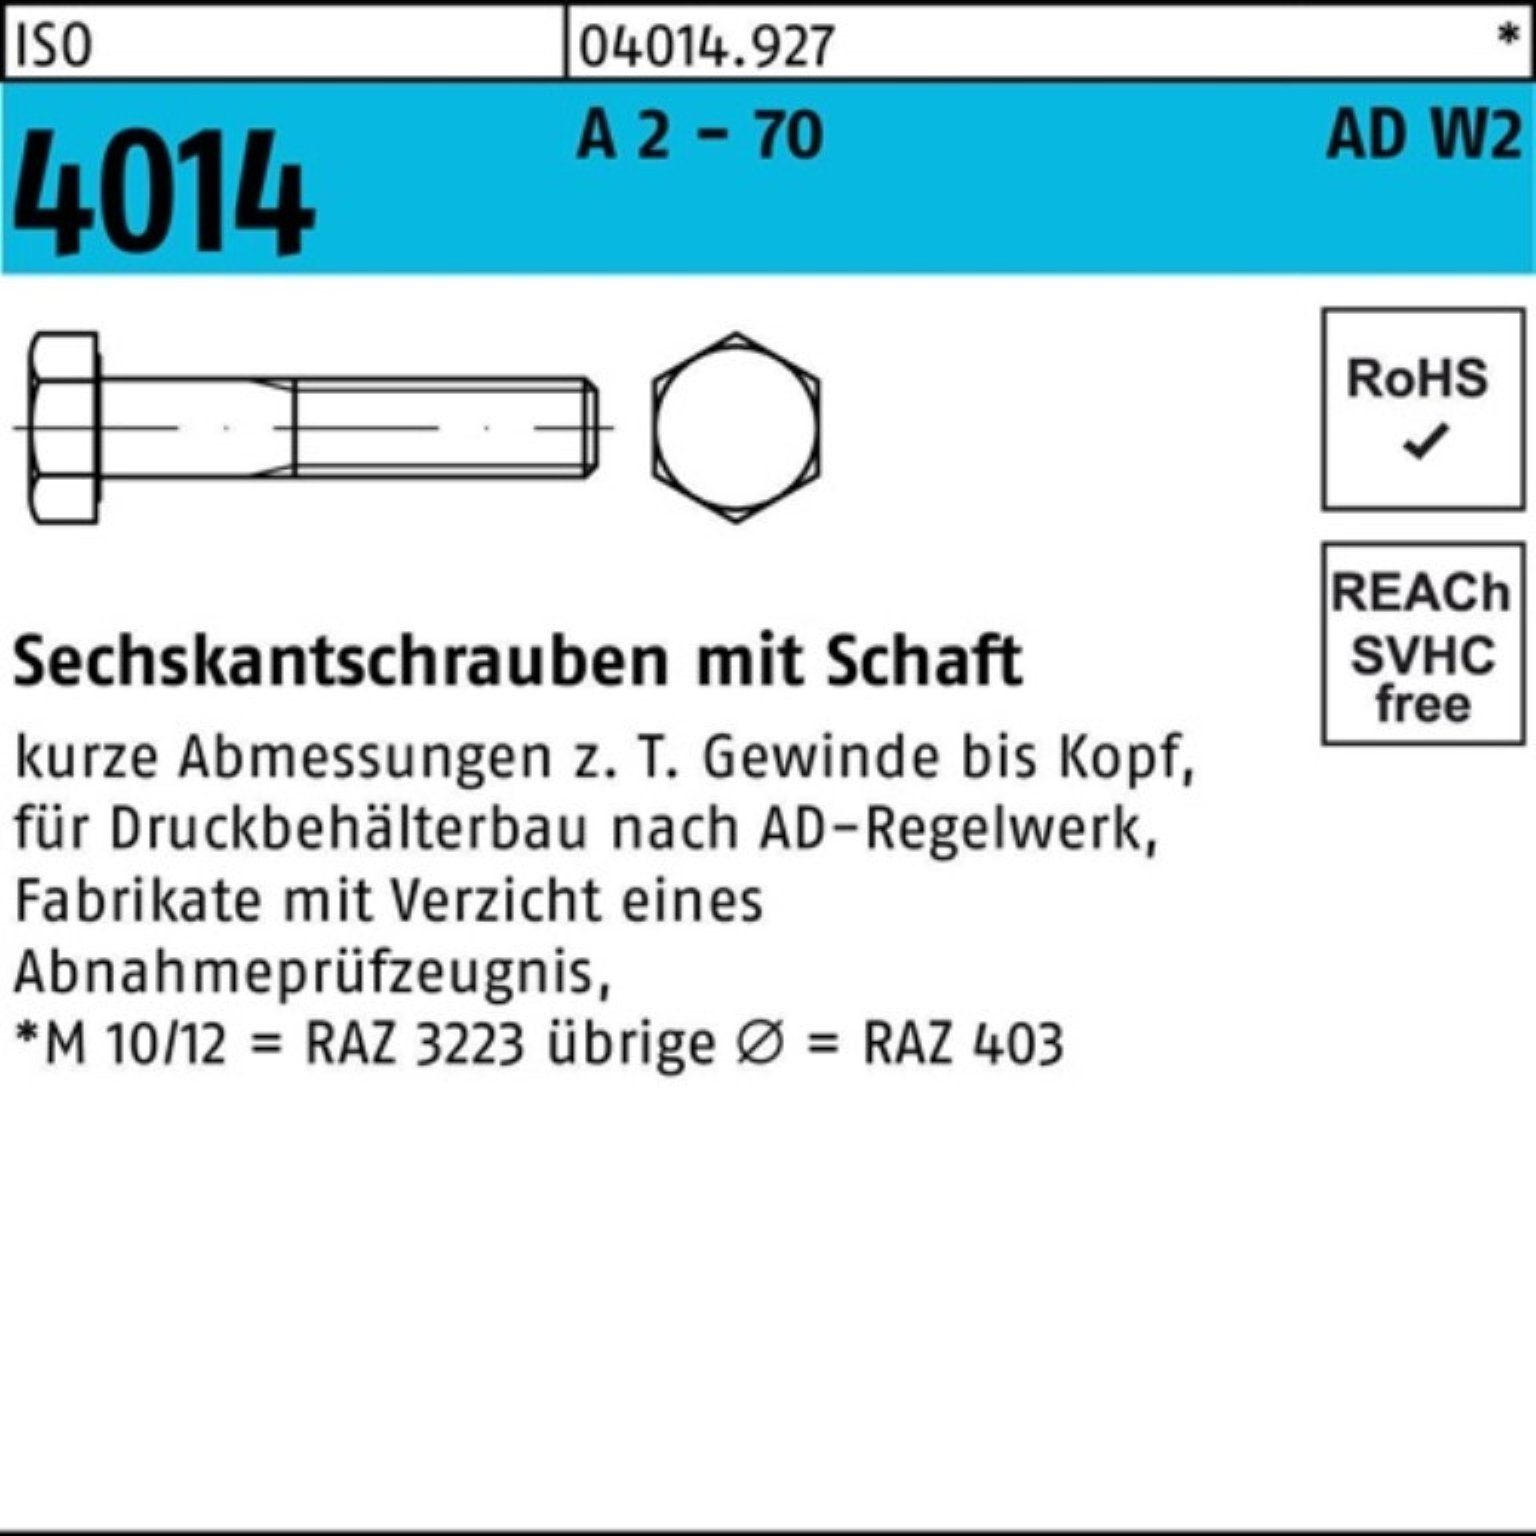 4014 Bufab 70 100er M12x - Sechskantschraube Pack A 2 Sechskantschraube AD-W2 50 50 ISO Schaft